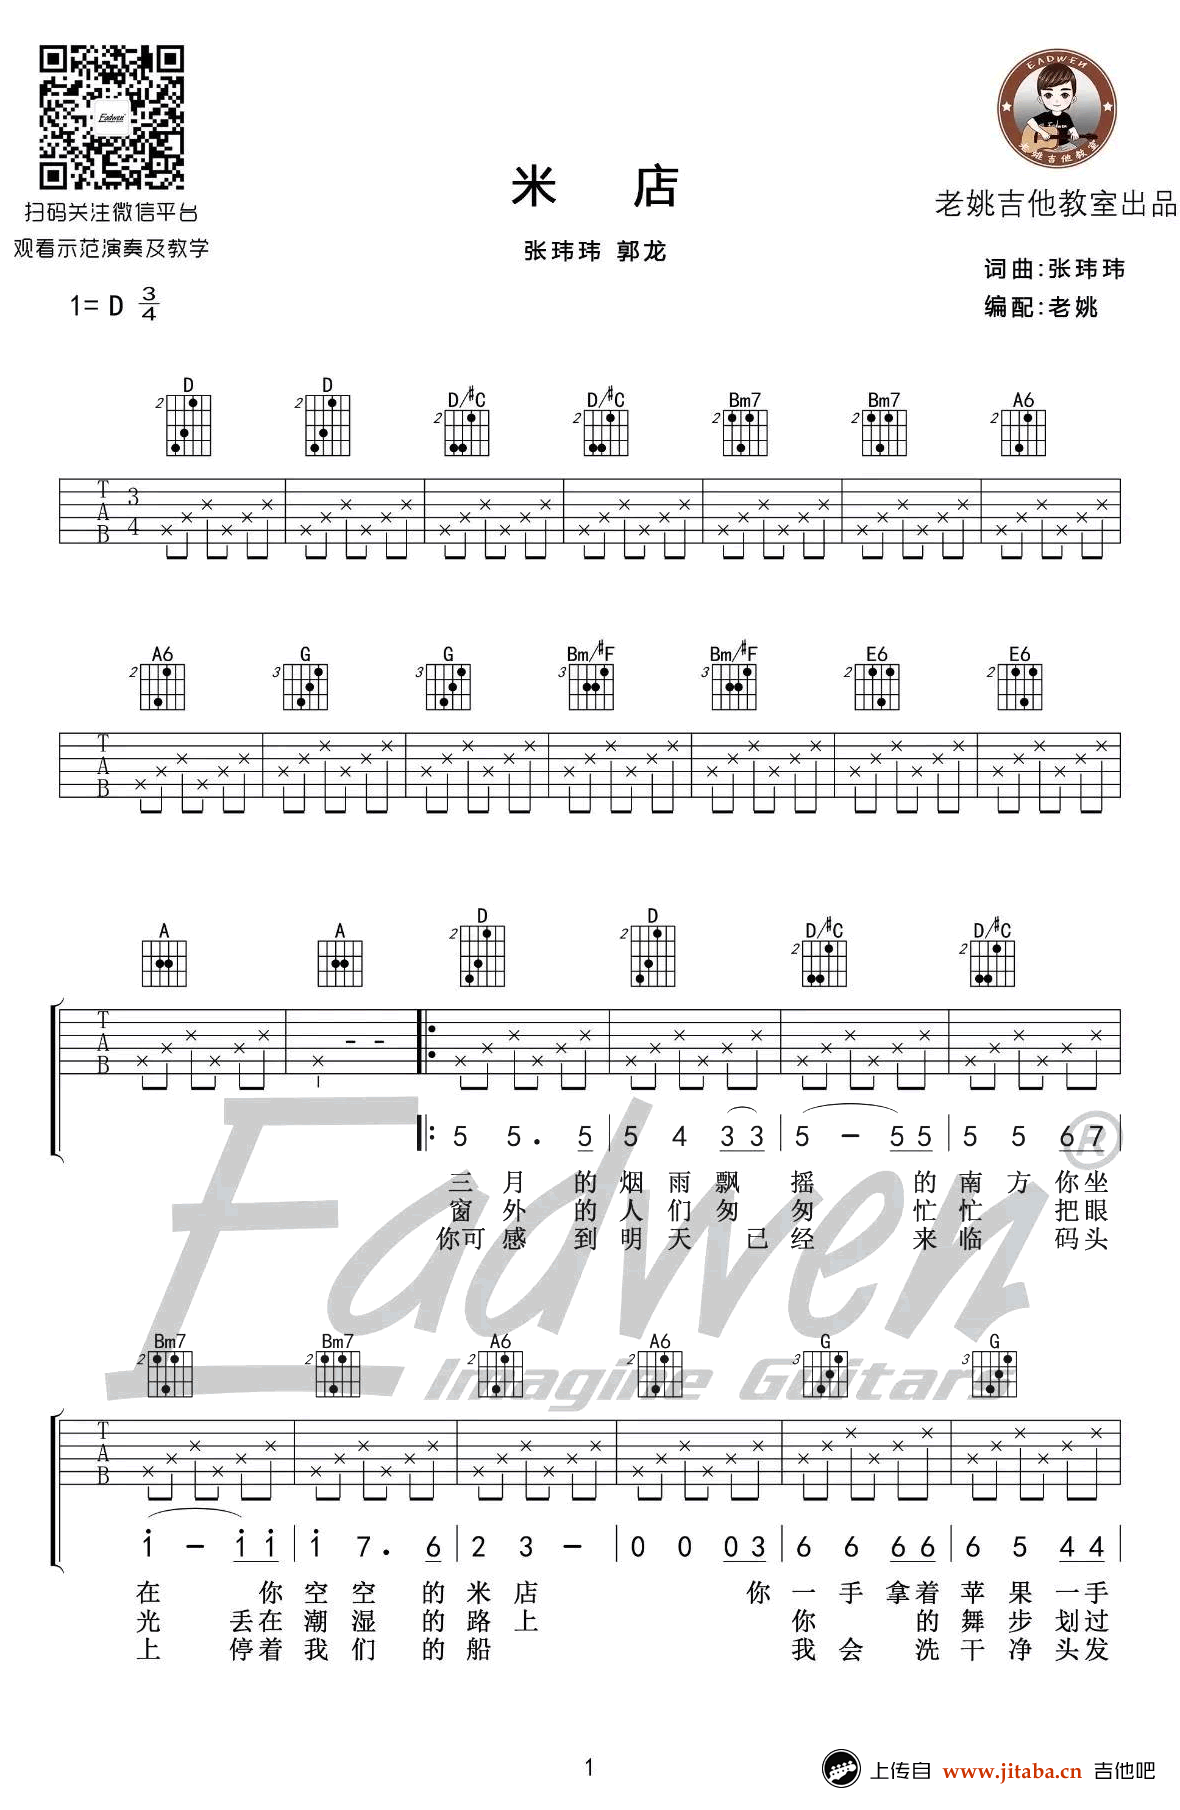 米店吉他谱-原版+简化版-张玮玮《米店》吉他弹唱教学1